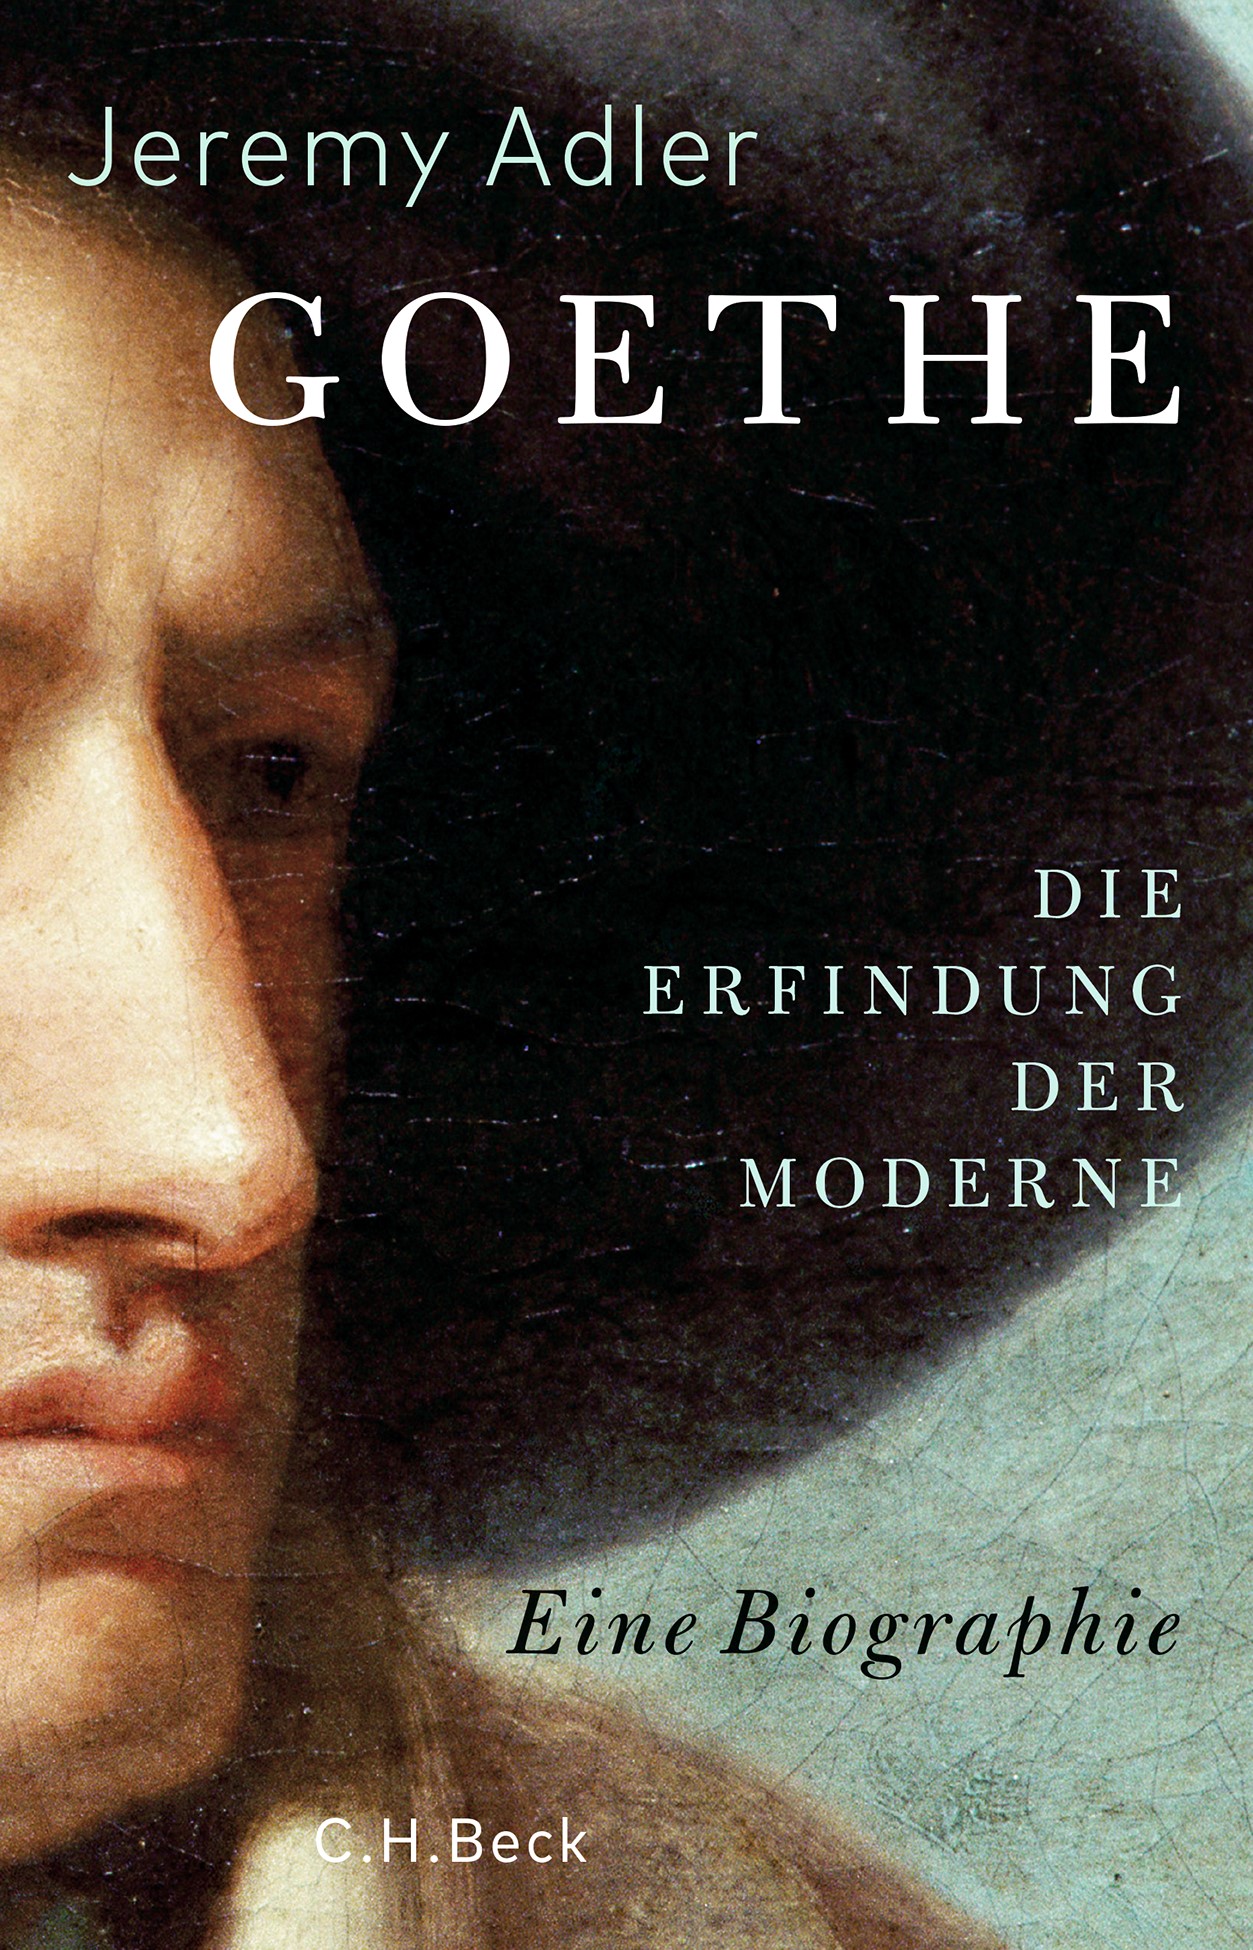 Cover: Adler, Jeremy, Goethe